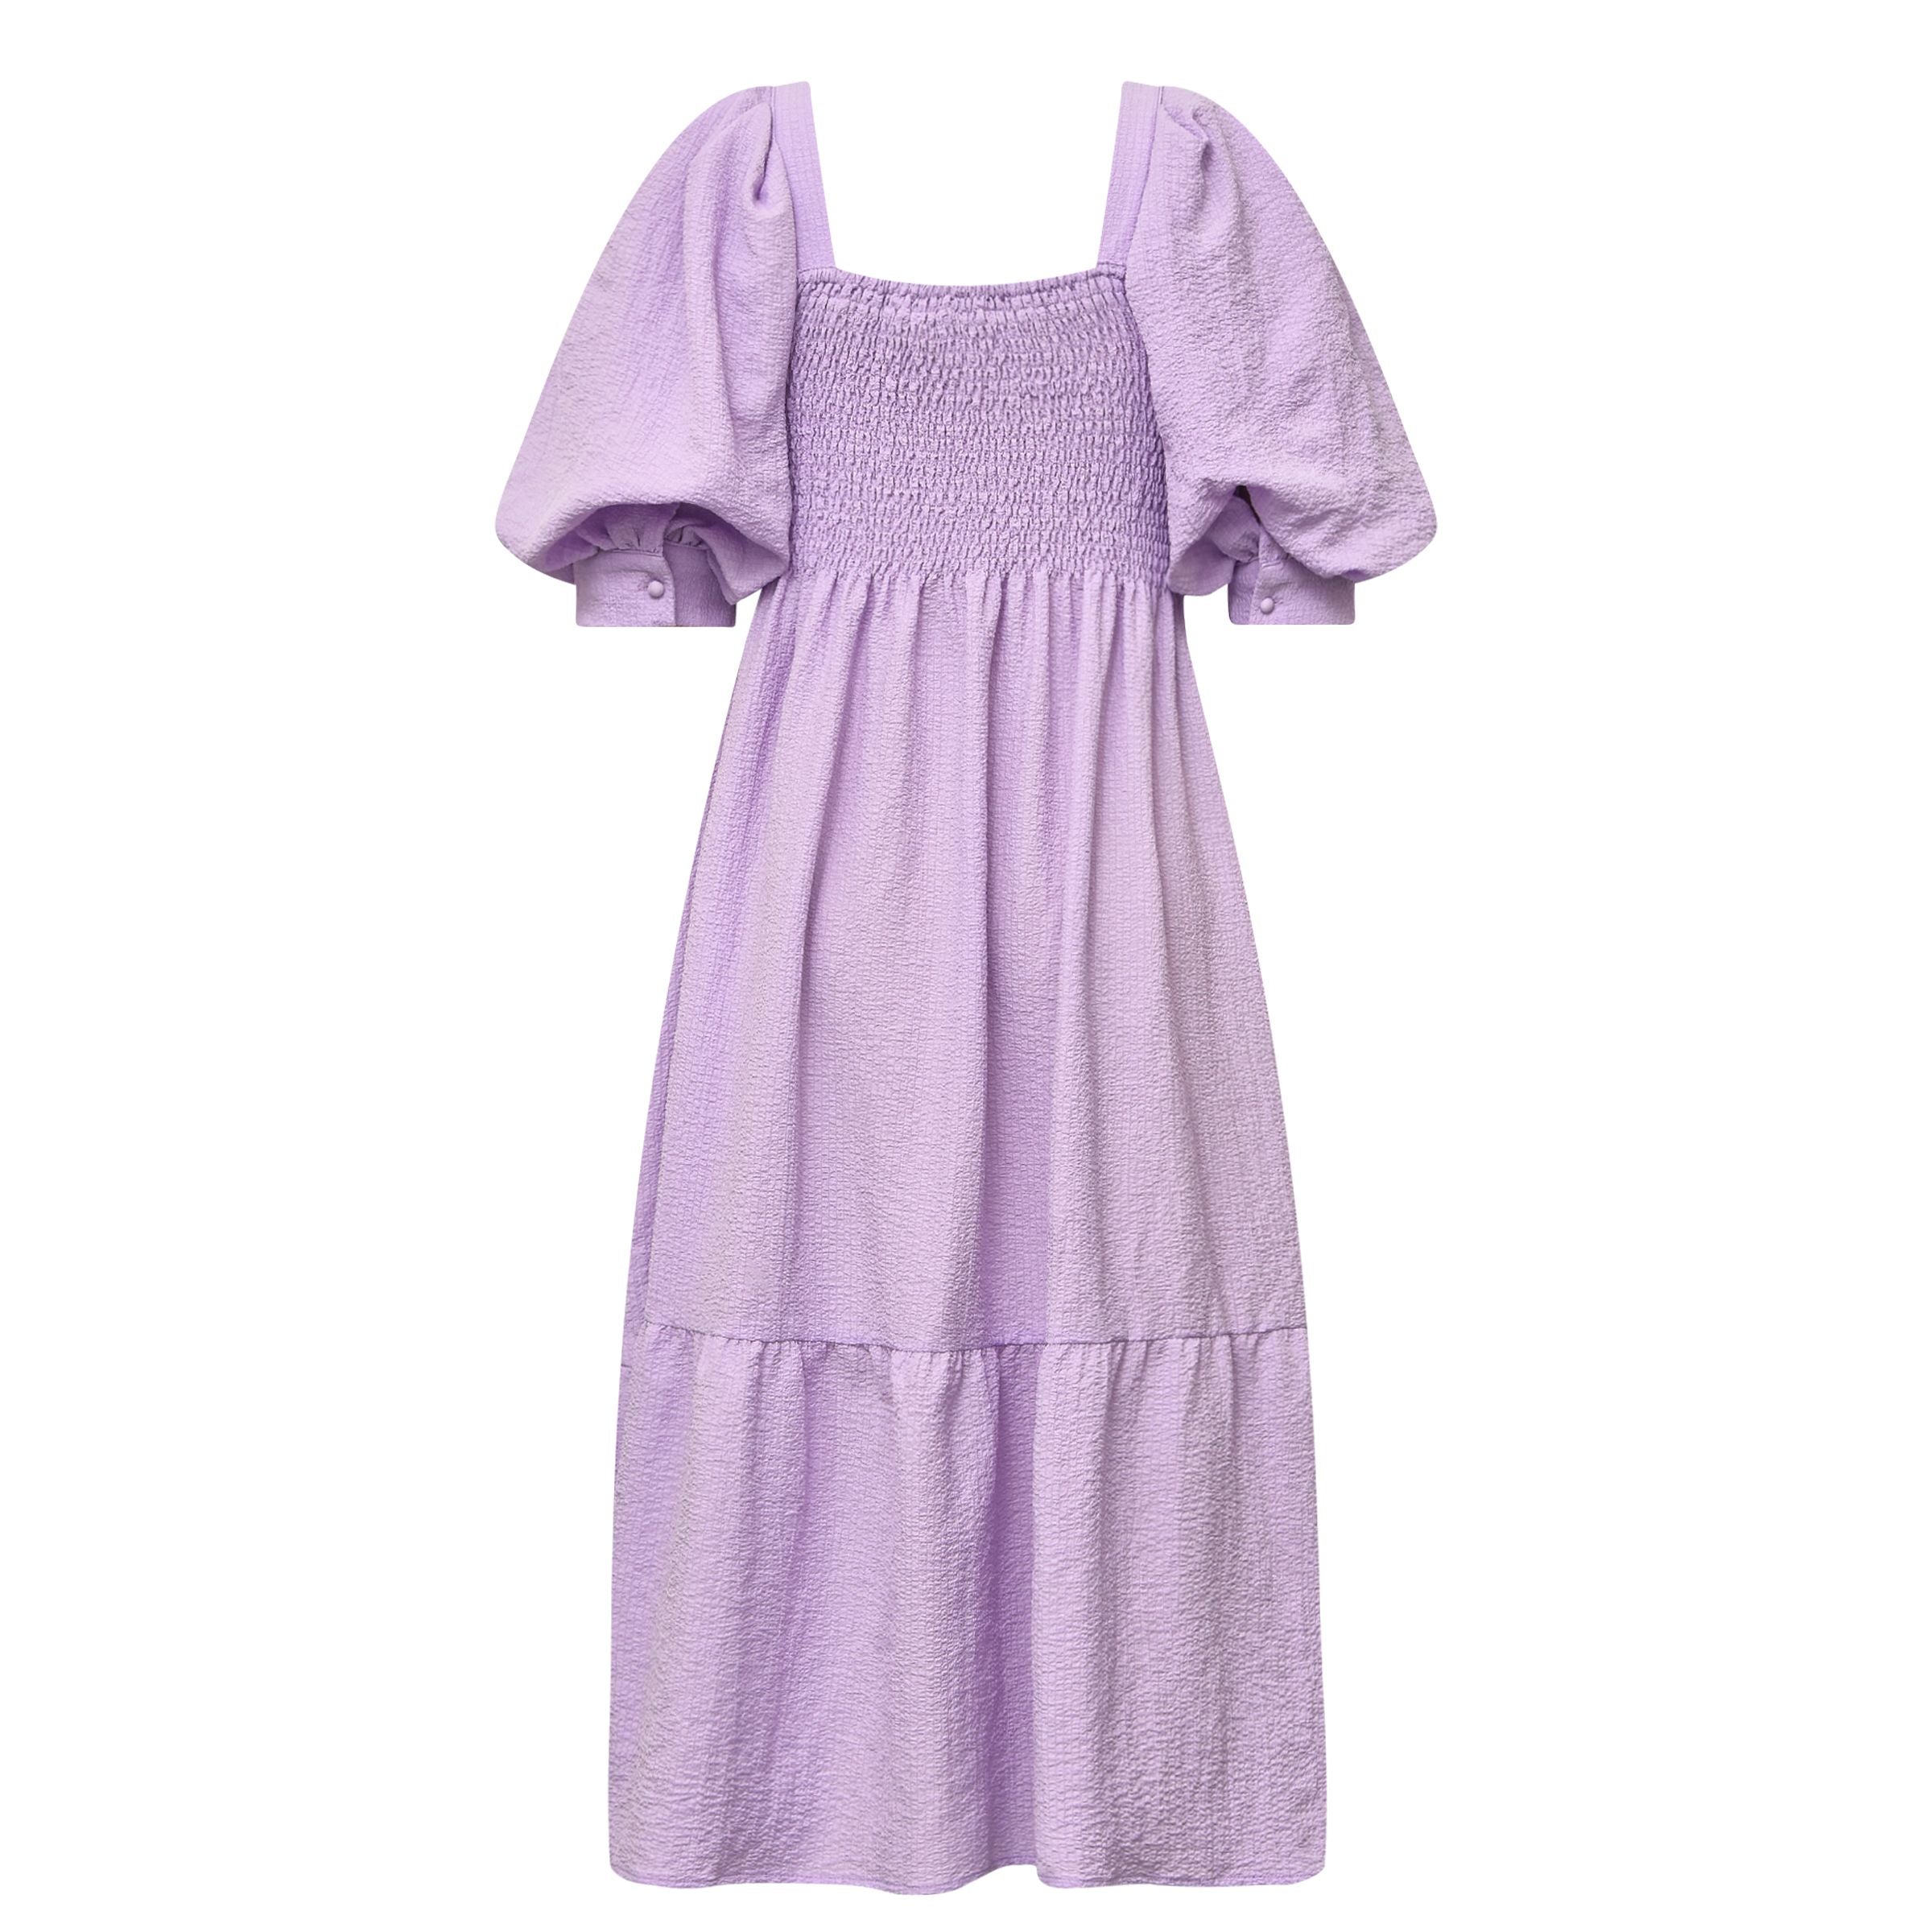 A-view - Cheri solid dress, lavendel by A-view | stylebykul